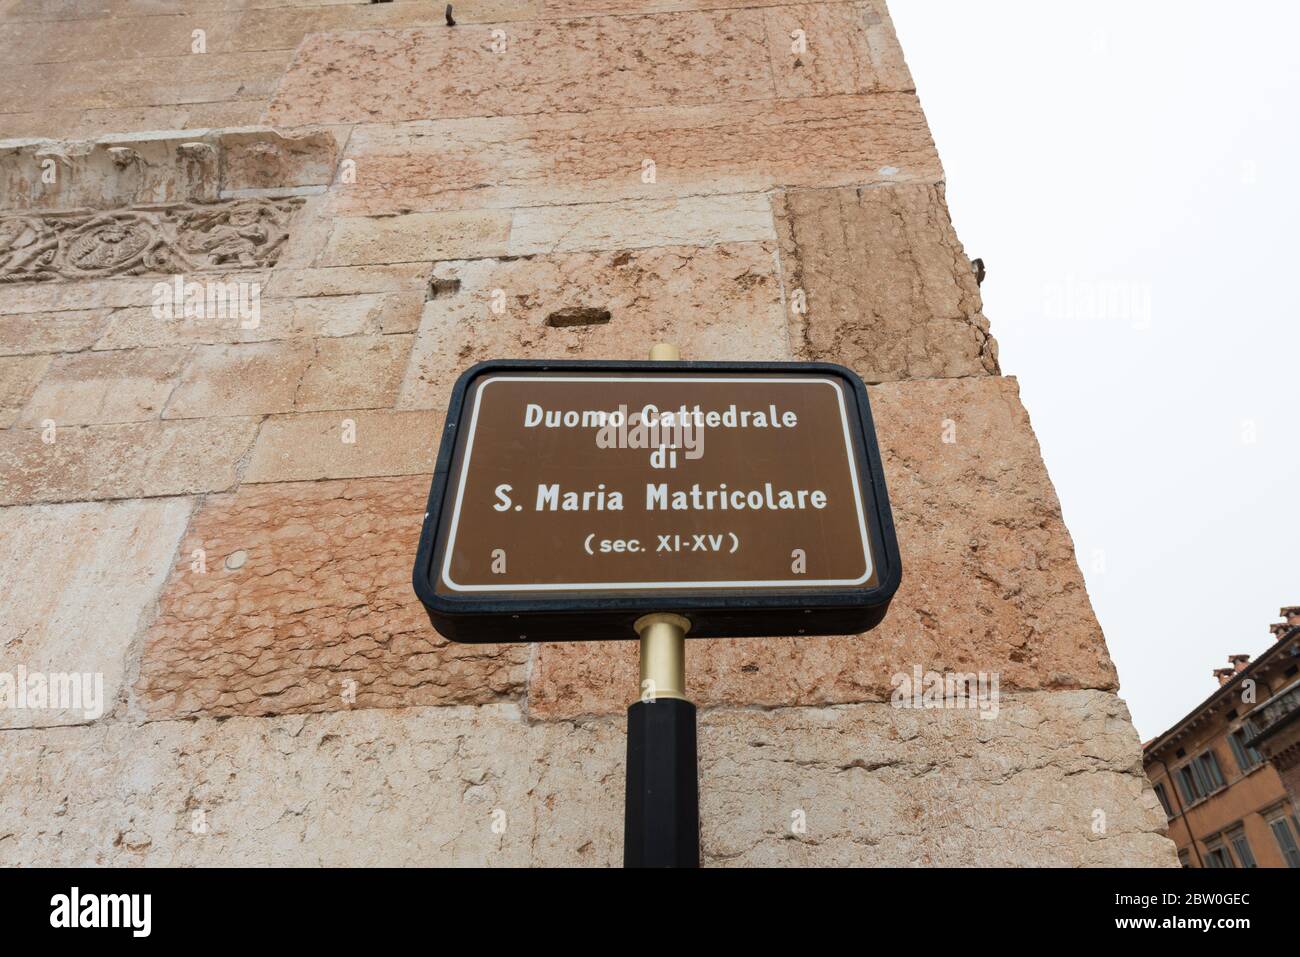 VERONA, ITALIA - 15, MARZO, 2018: Imagen horizontal de cartel escrito el nombre de la catedral de Santa María Matricolare en italiano. Foto de stock